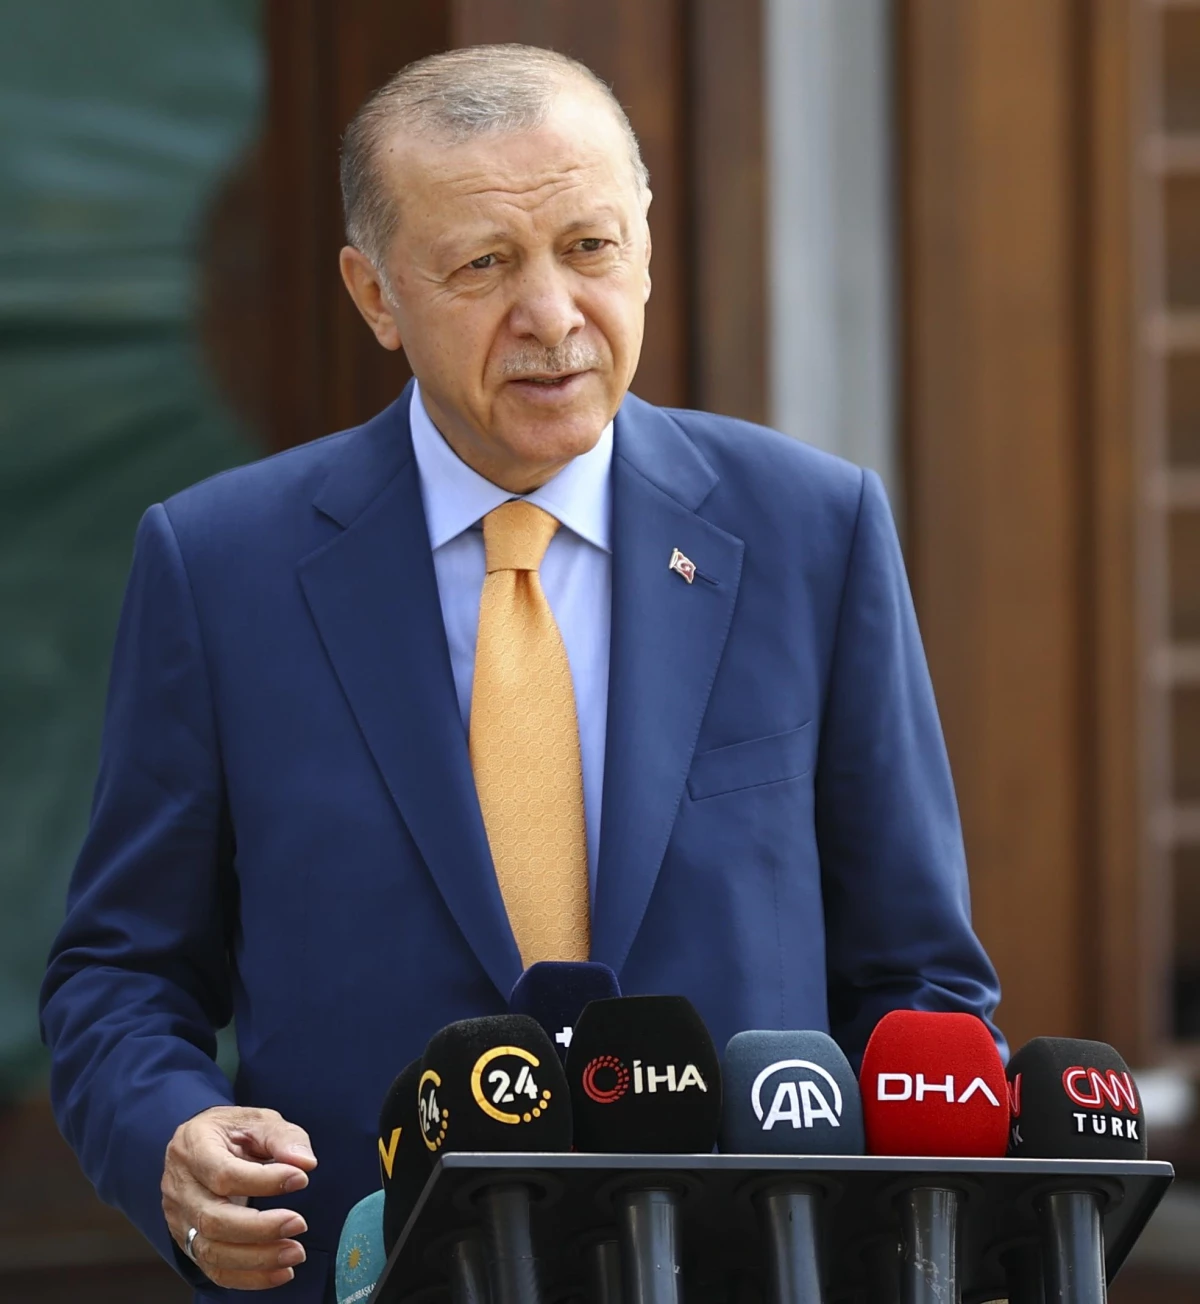 Cumhurbaşkanı Erdoğan: "(Kılıçdaroğlu\'nun KHK açıklaması) Türkiye bir hukuk devleti.